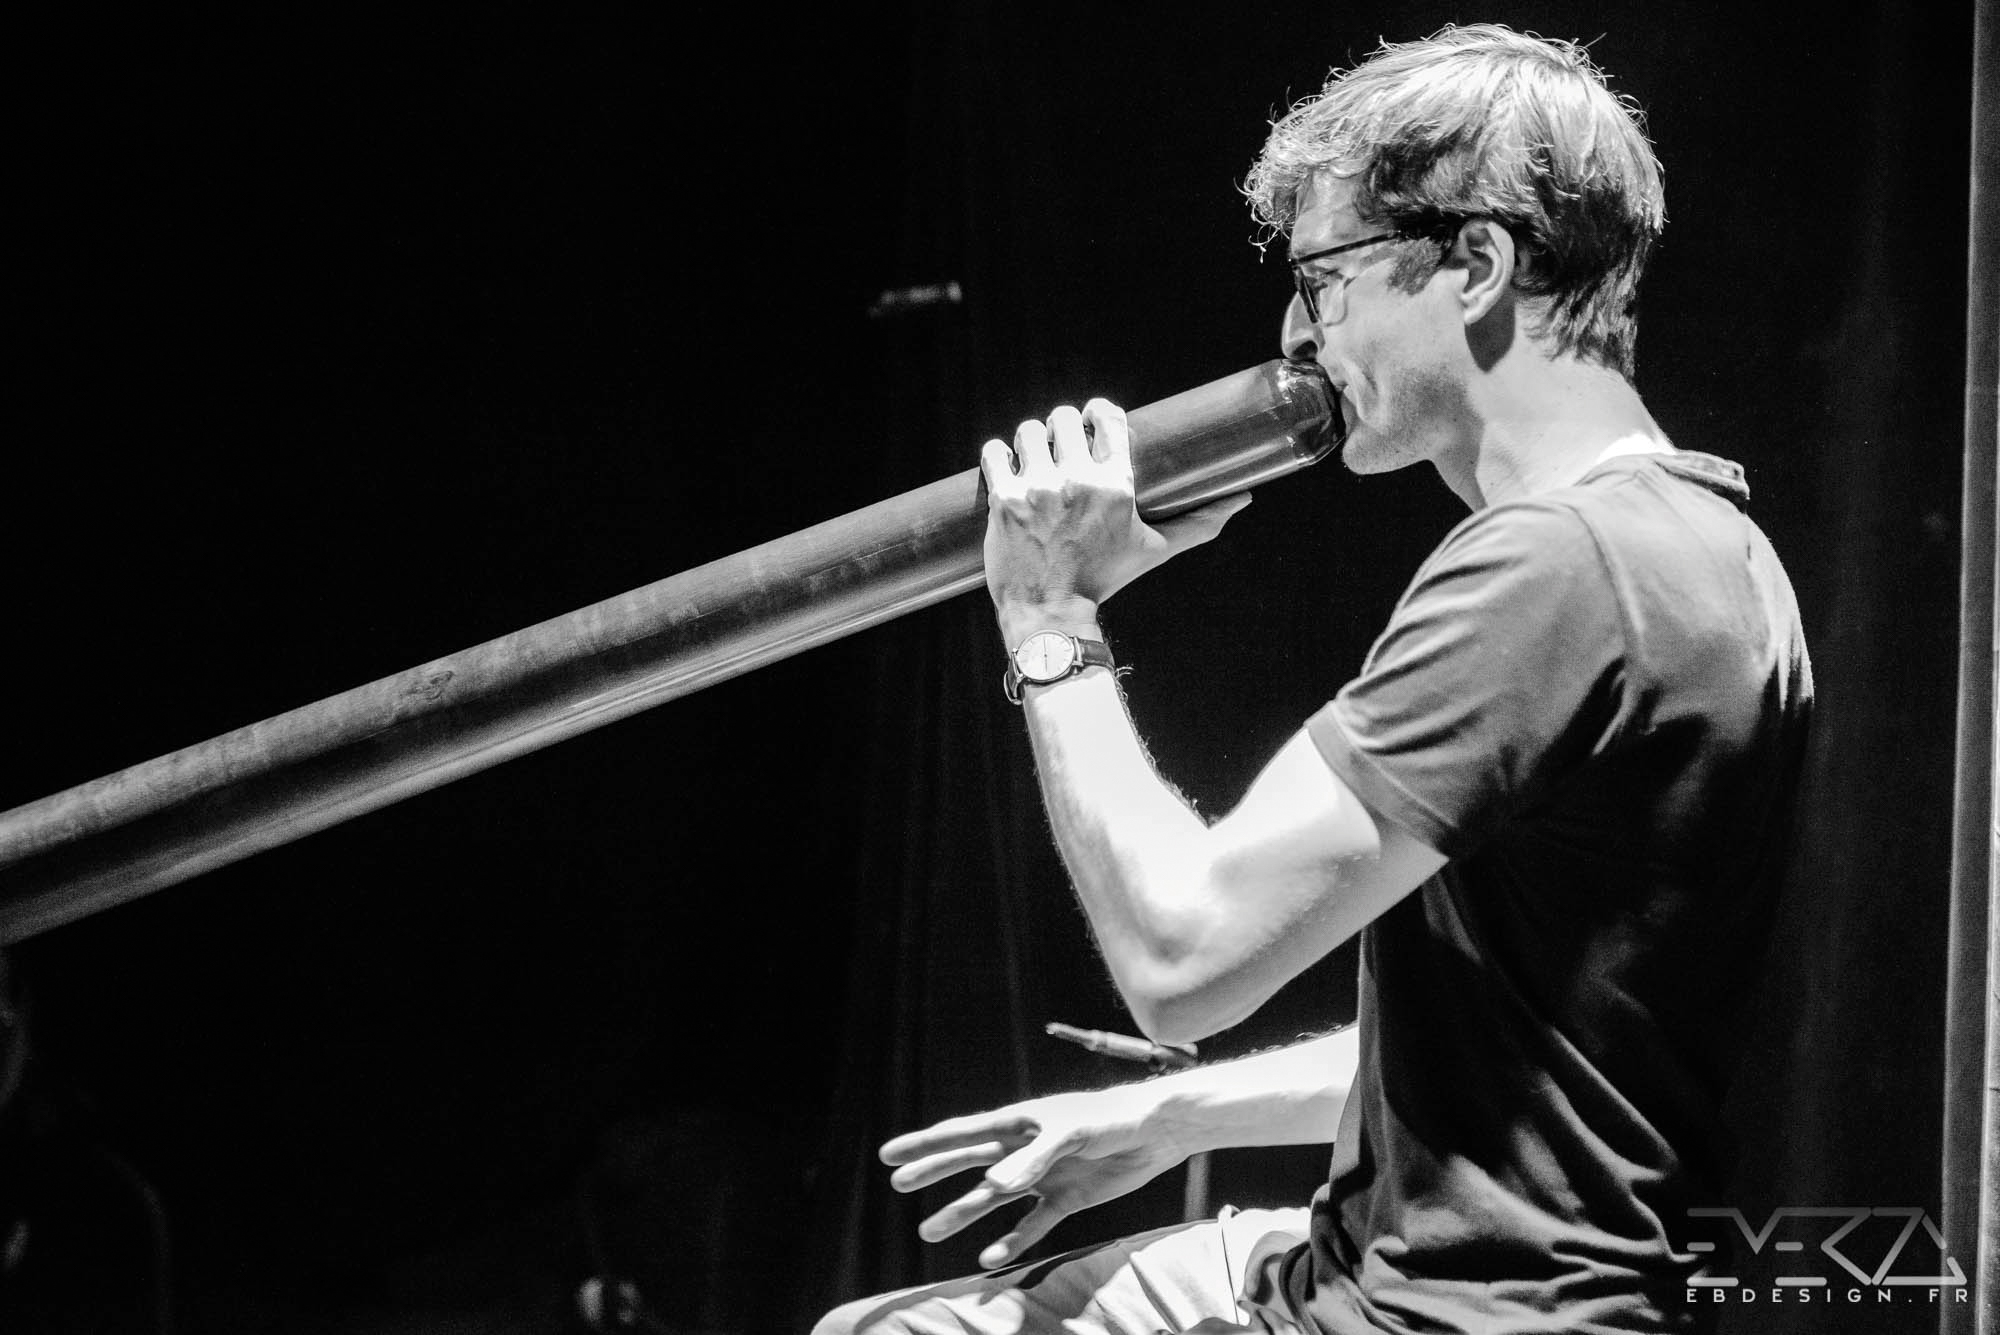 Jouer du didgeridoo